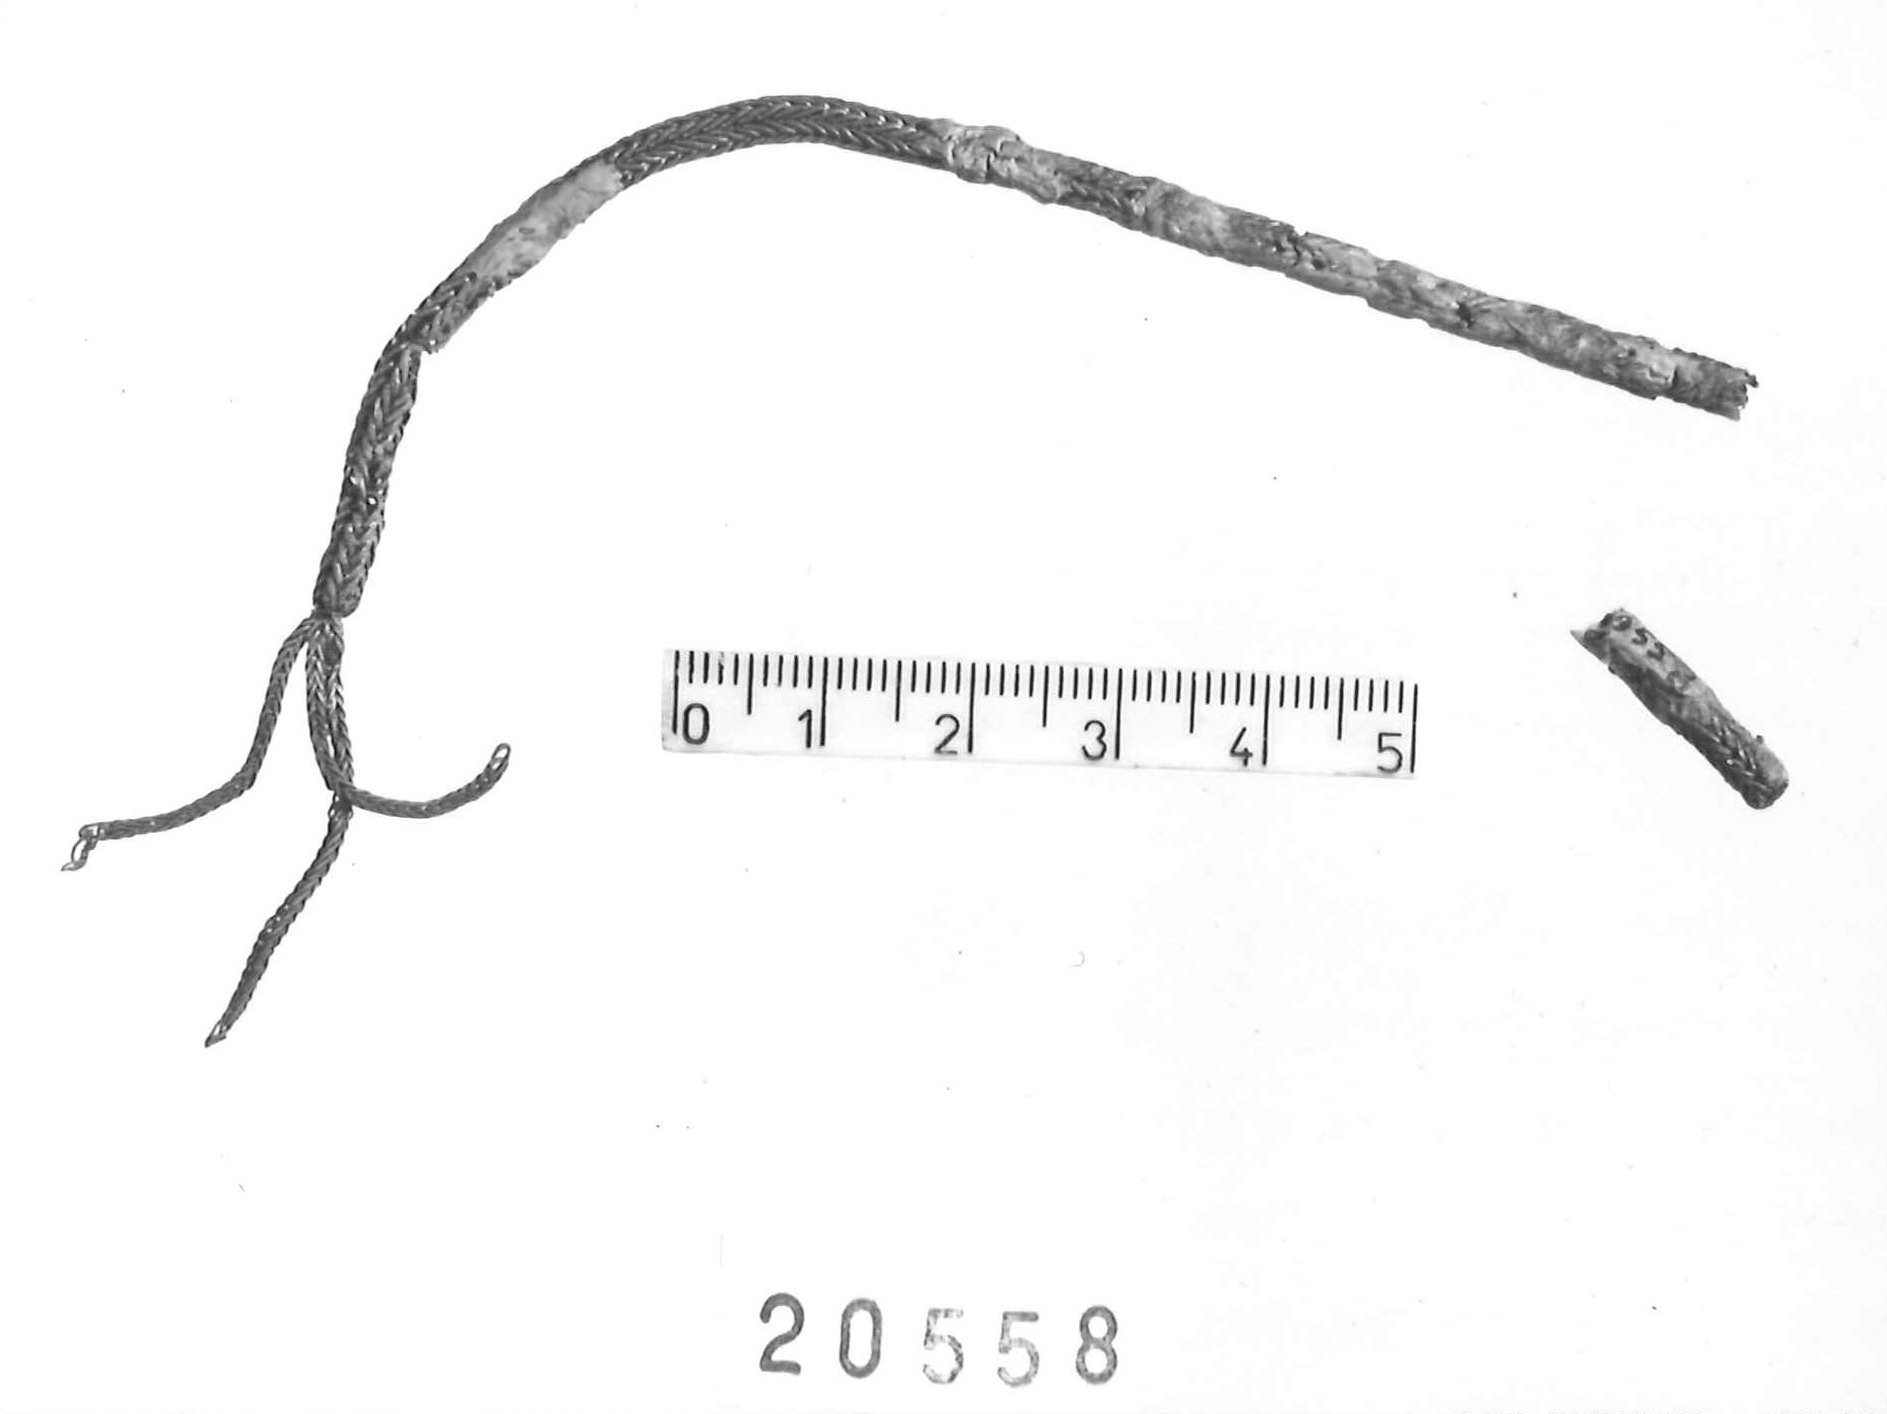 catenella - Piceno III (secc. VII-VI a.C)